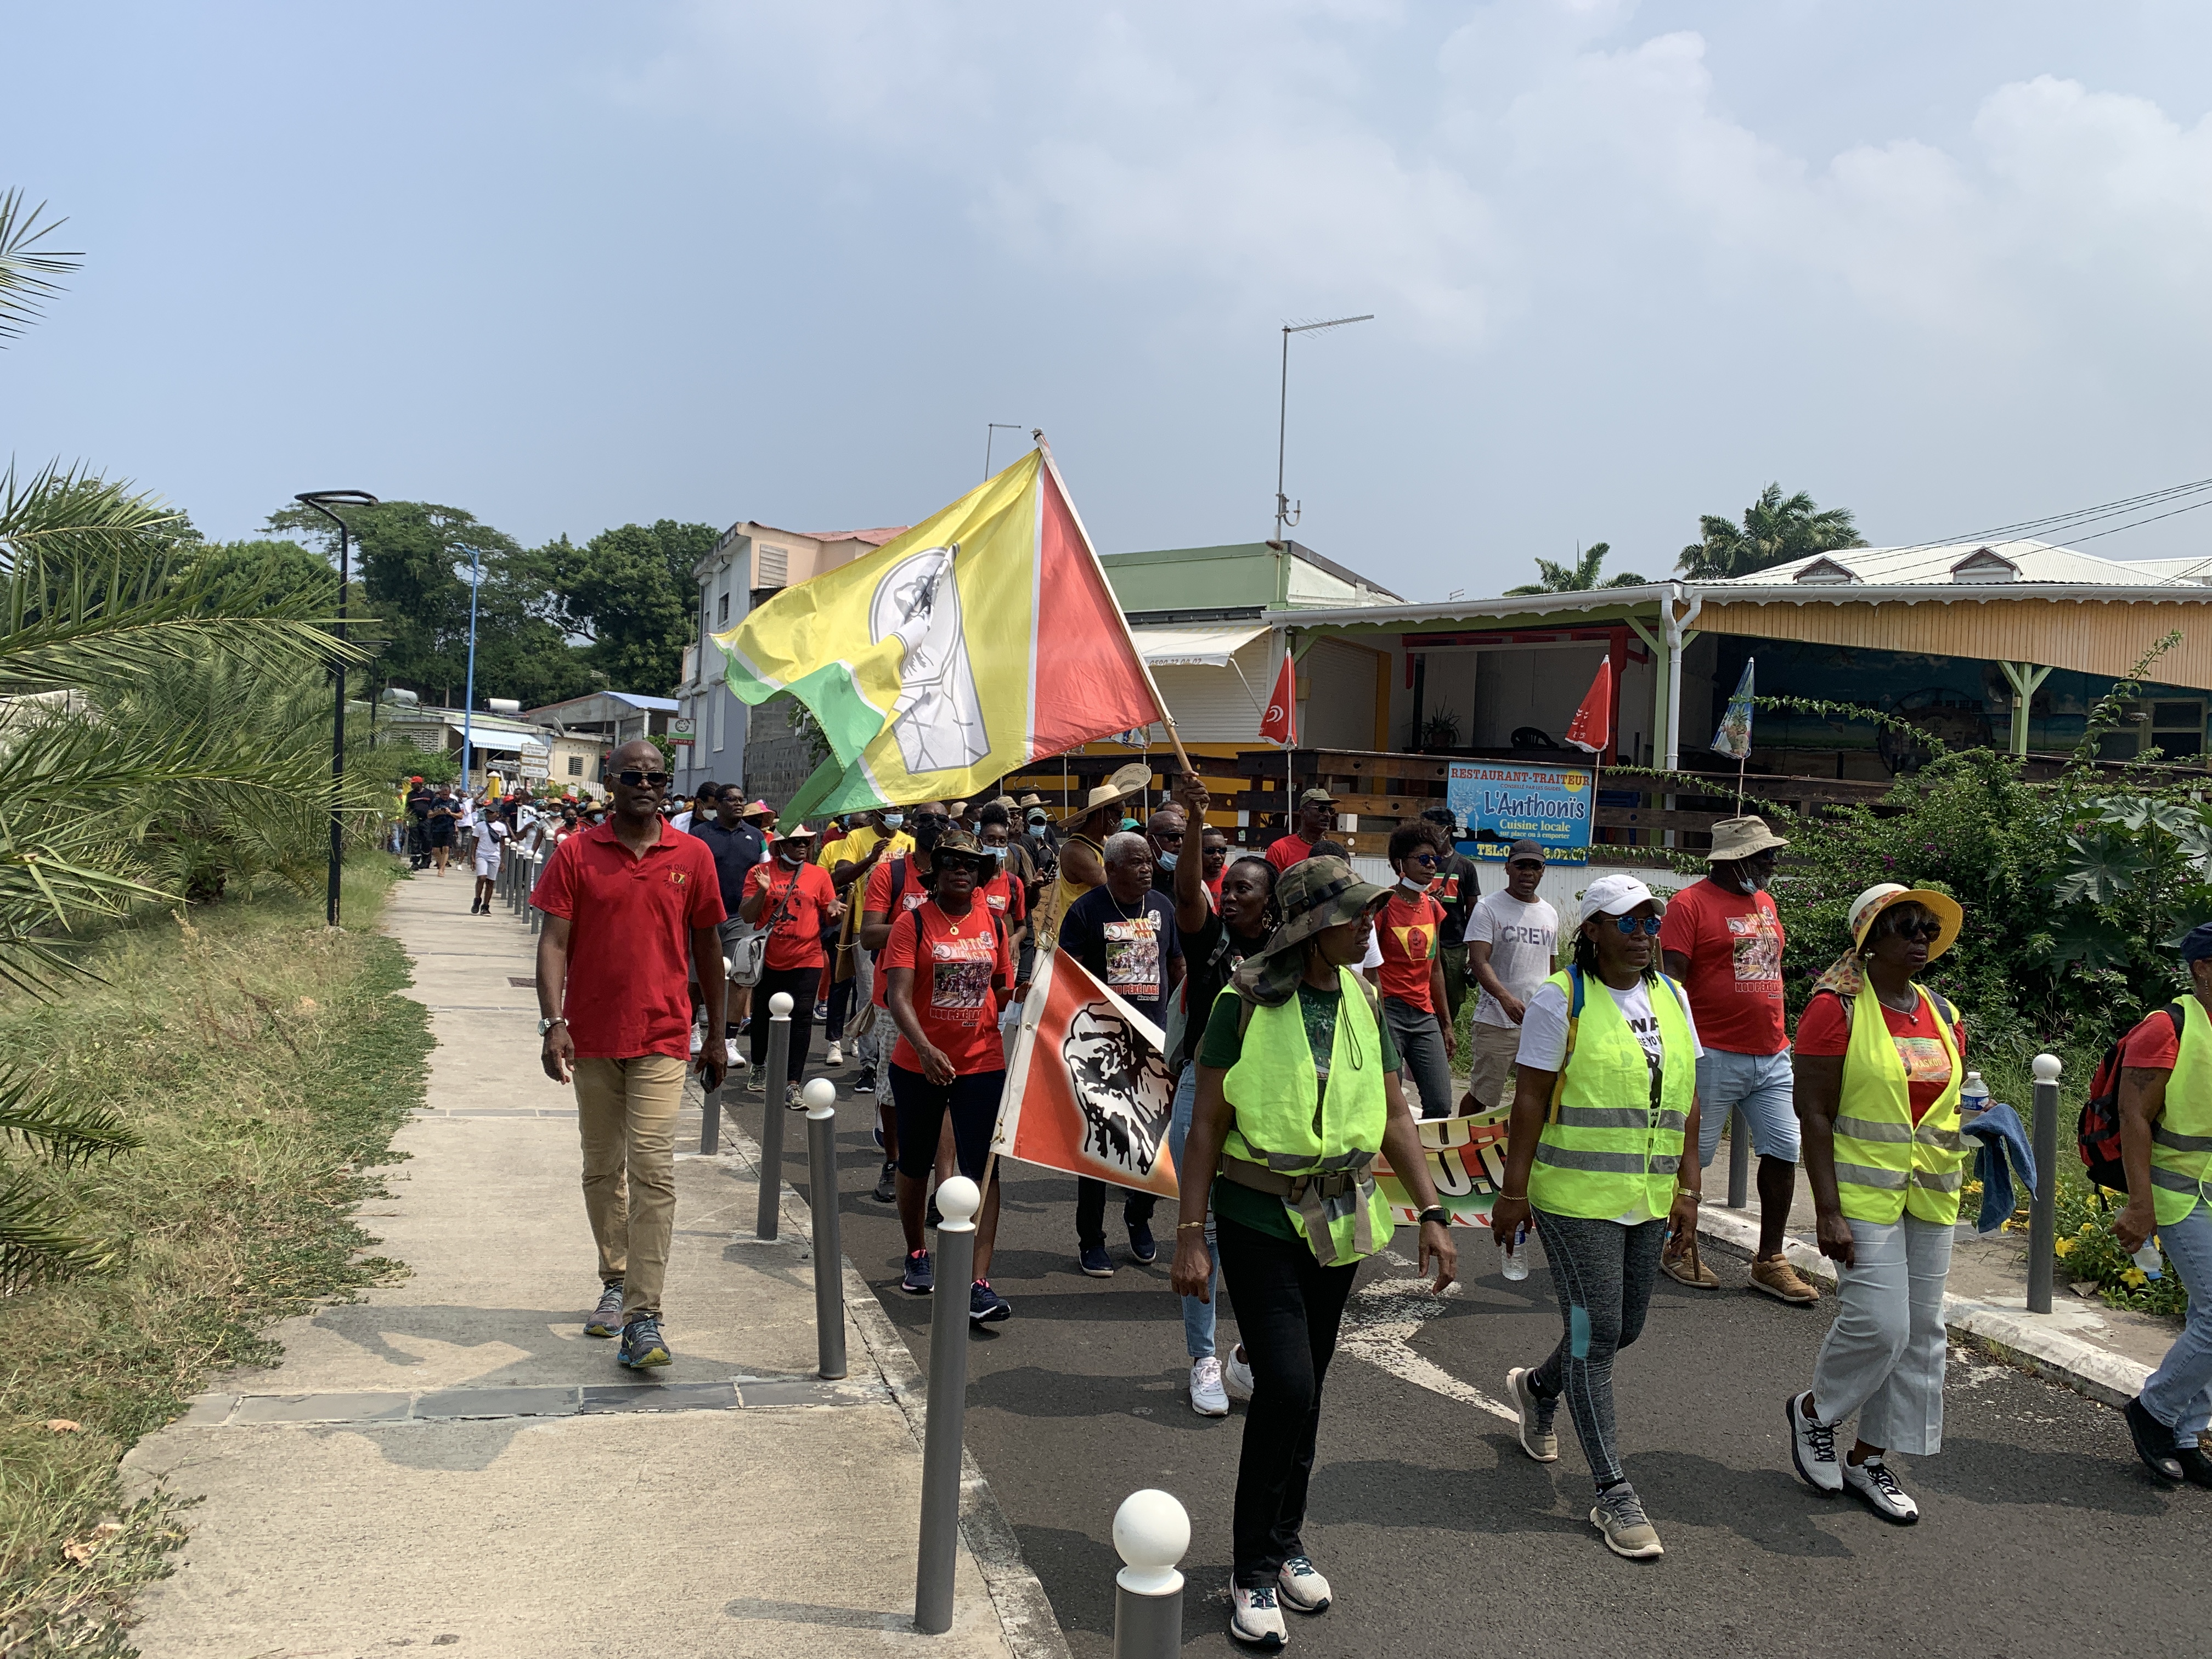     Anse-Bertrand : retour sur la manifestation contre la vaccination obligation obligatoire

